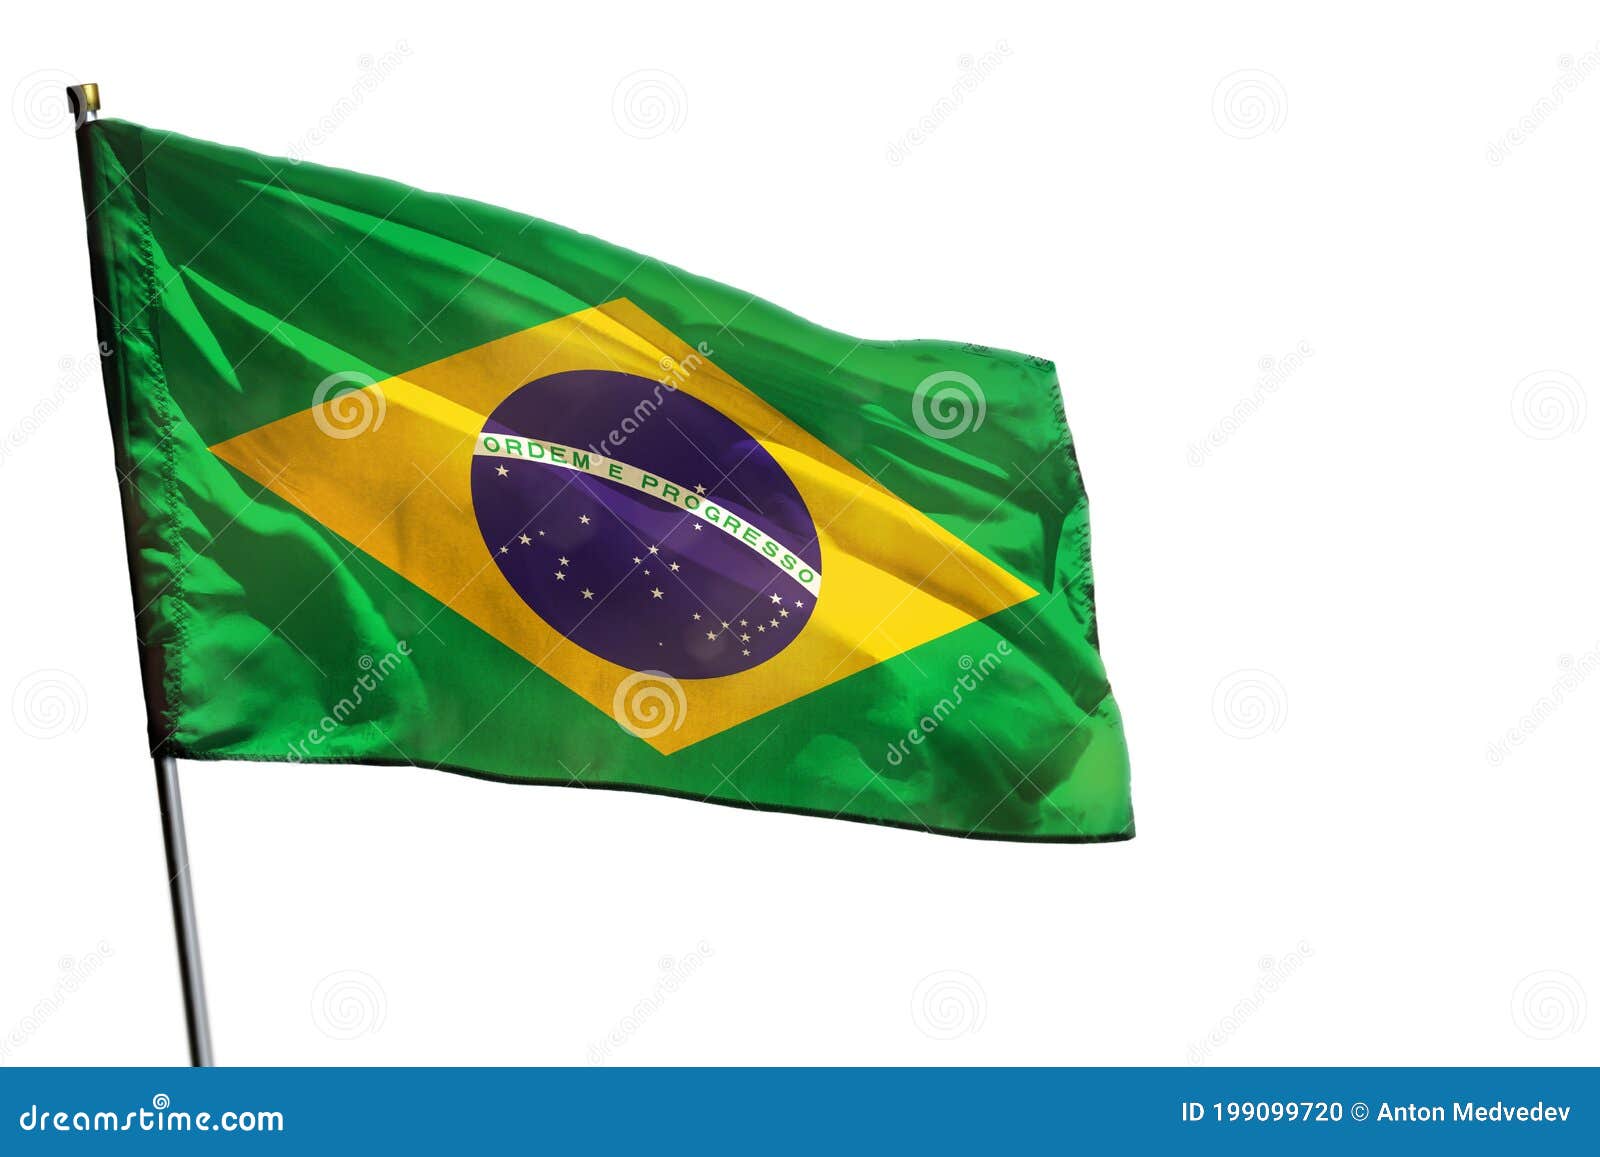 Với màu xanh và vàng rực rỡ, cờ đất nước Brazil đã trở thành biểu tượng của văn hóa và nền kinh tế của đất nước này. Hãy xem hình ảnh cờ Brazil này và tìm hiểu thêm về đất nước này.